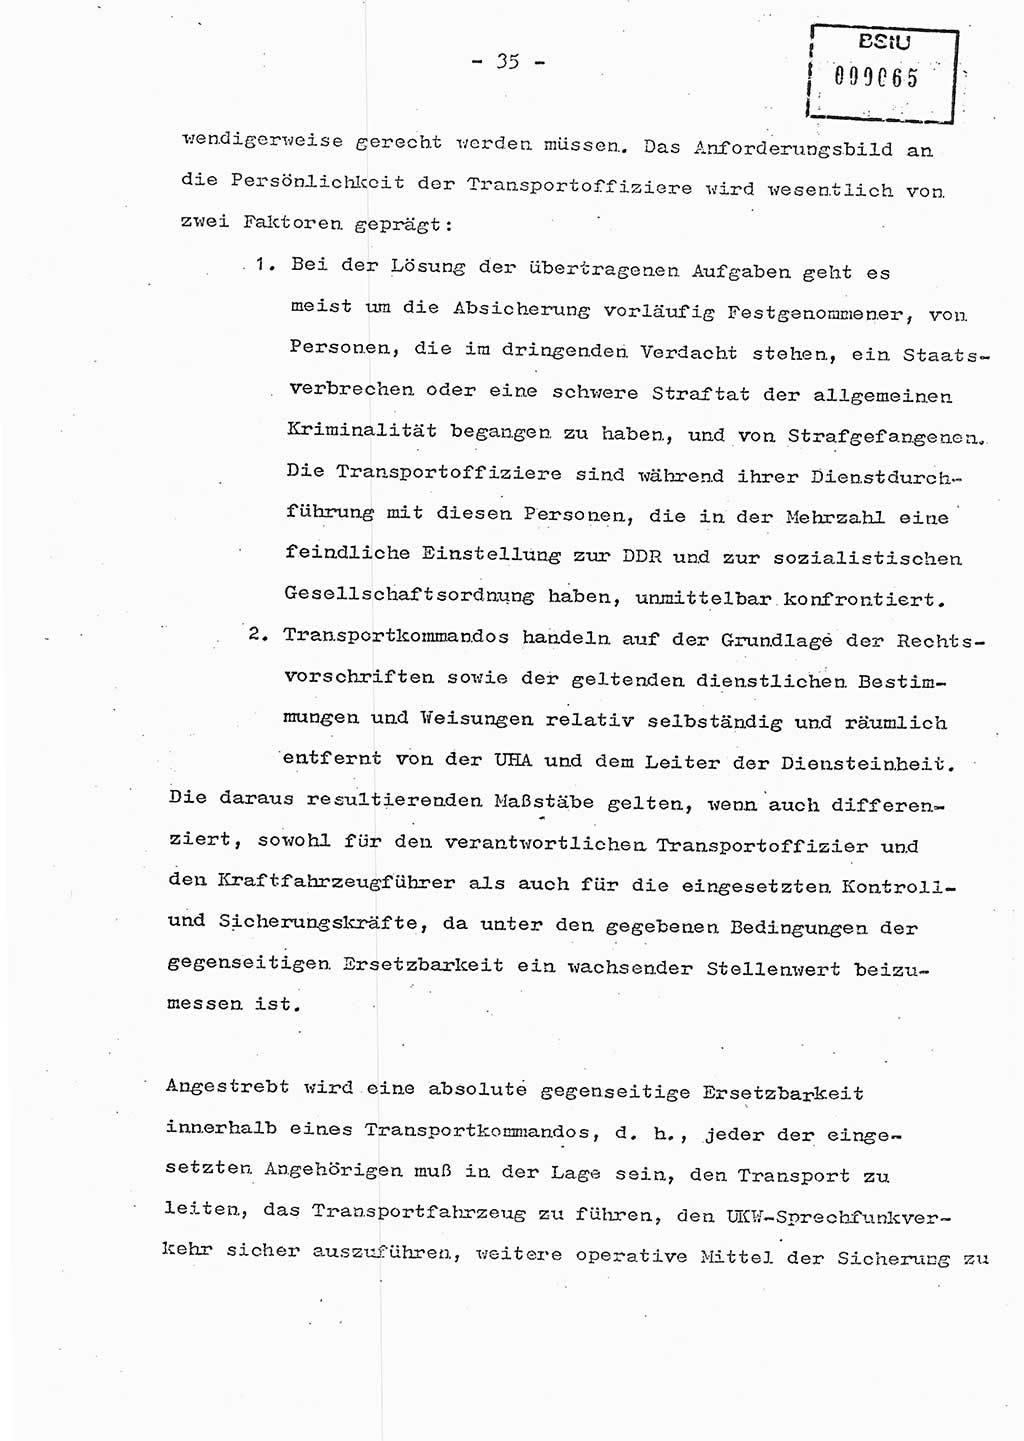 Schulungsmaterial Exemplar-Nr.: 7, Ministerium für Staatssicherheit [Deutsche Demokratische Republik (DDR)], Abteilung (Abt.) ⅩⅣ, Berlin 1986, Seite 35 (Sch.-Mat. Expl. 7 MfS DDR Abt. ⅩⅣ /86 1986, S. 35)